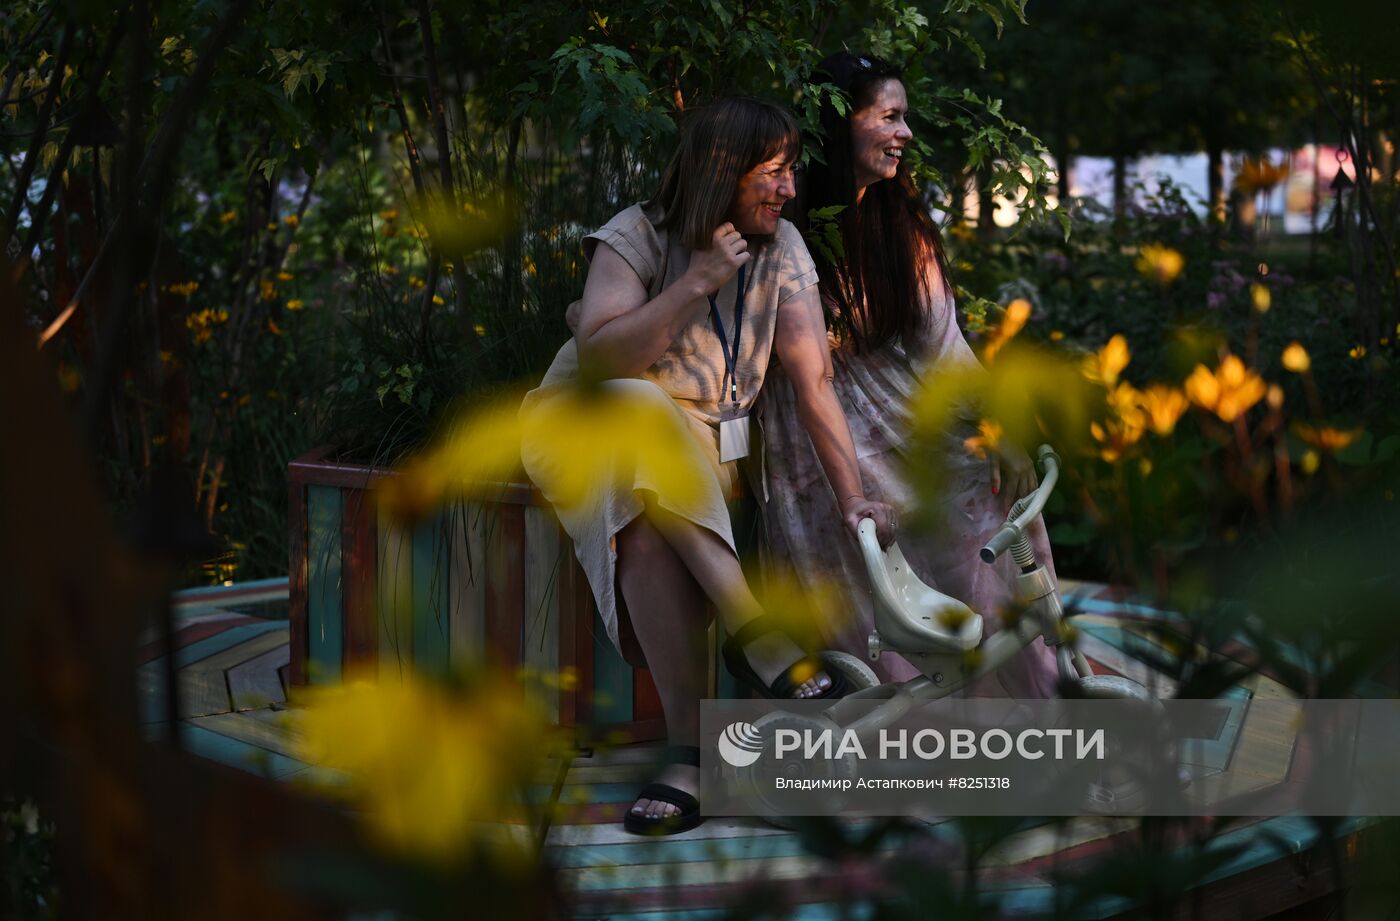 VIII Московский международный фестиваль ландшафтного искусства "Сады и люди"